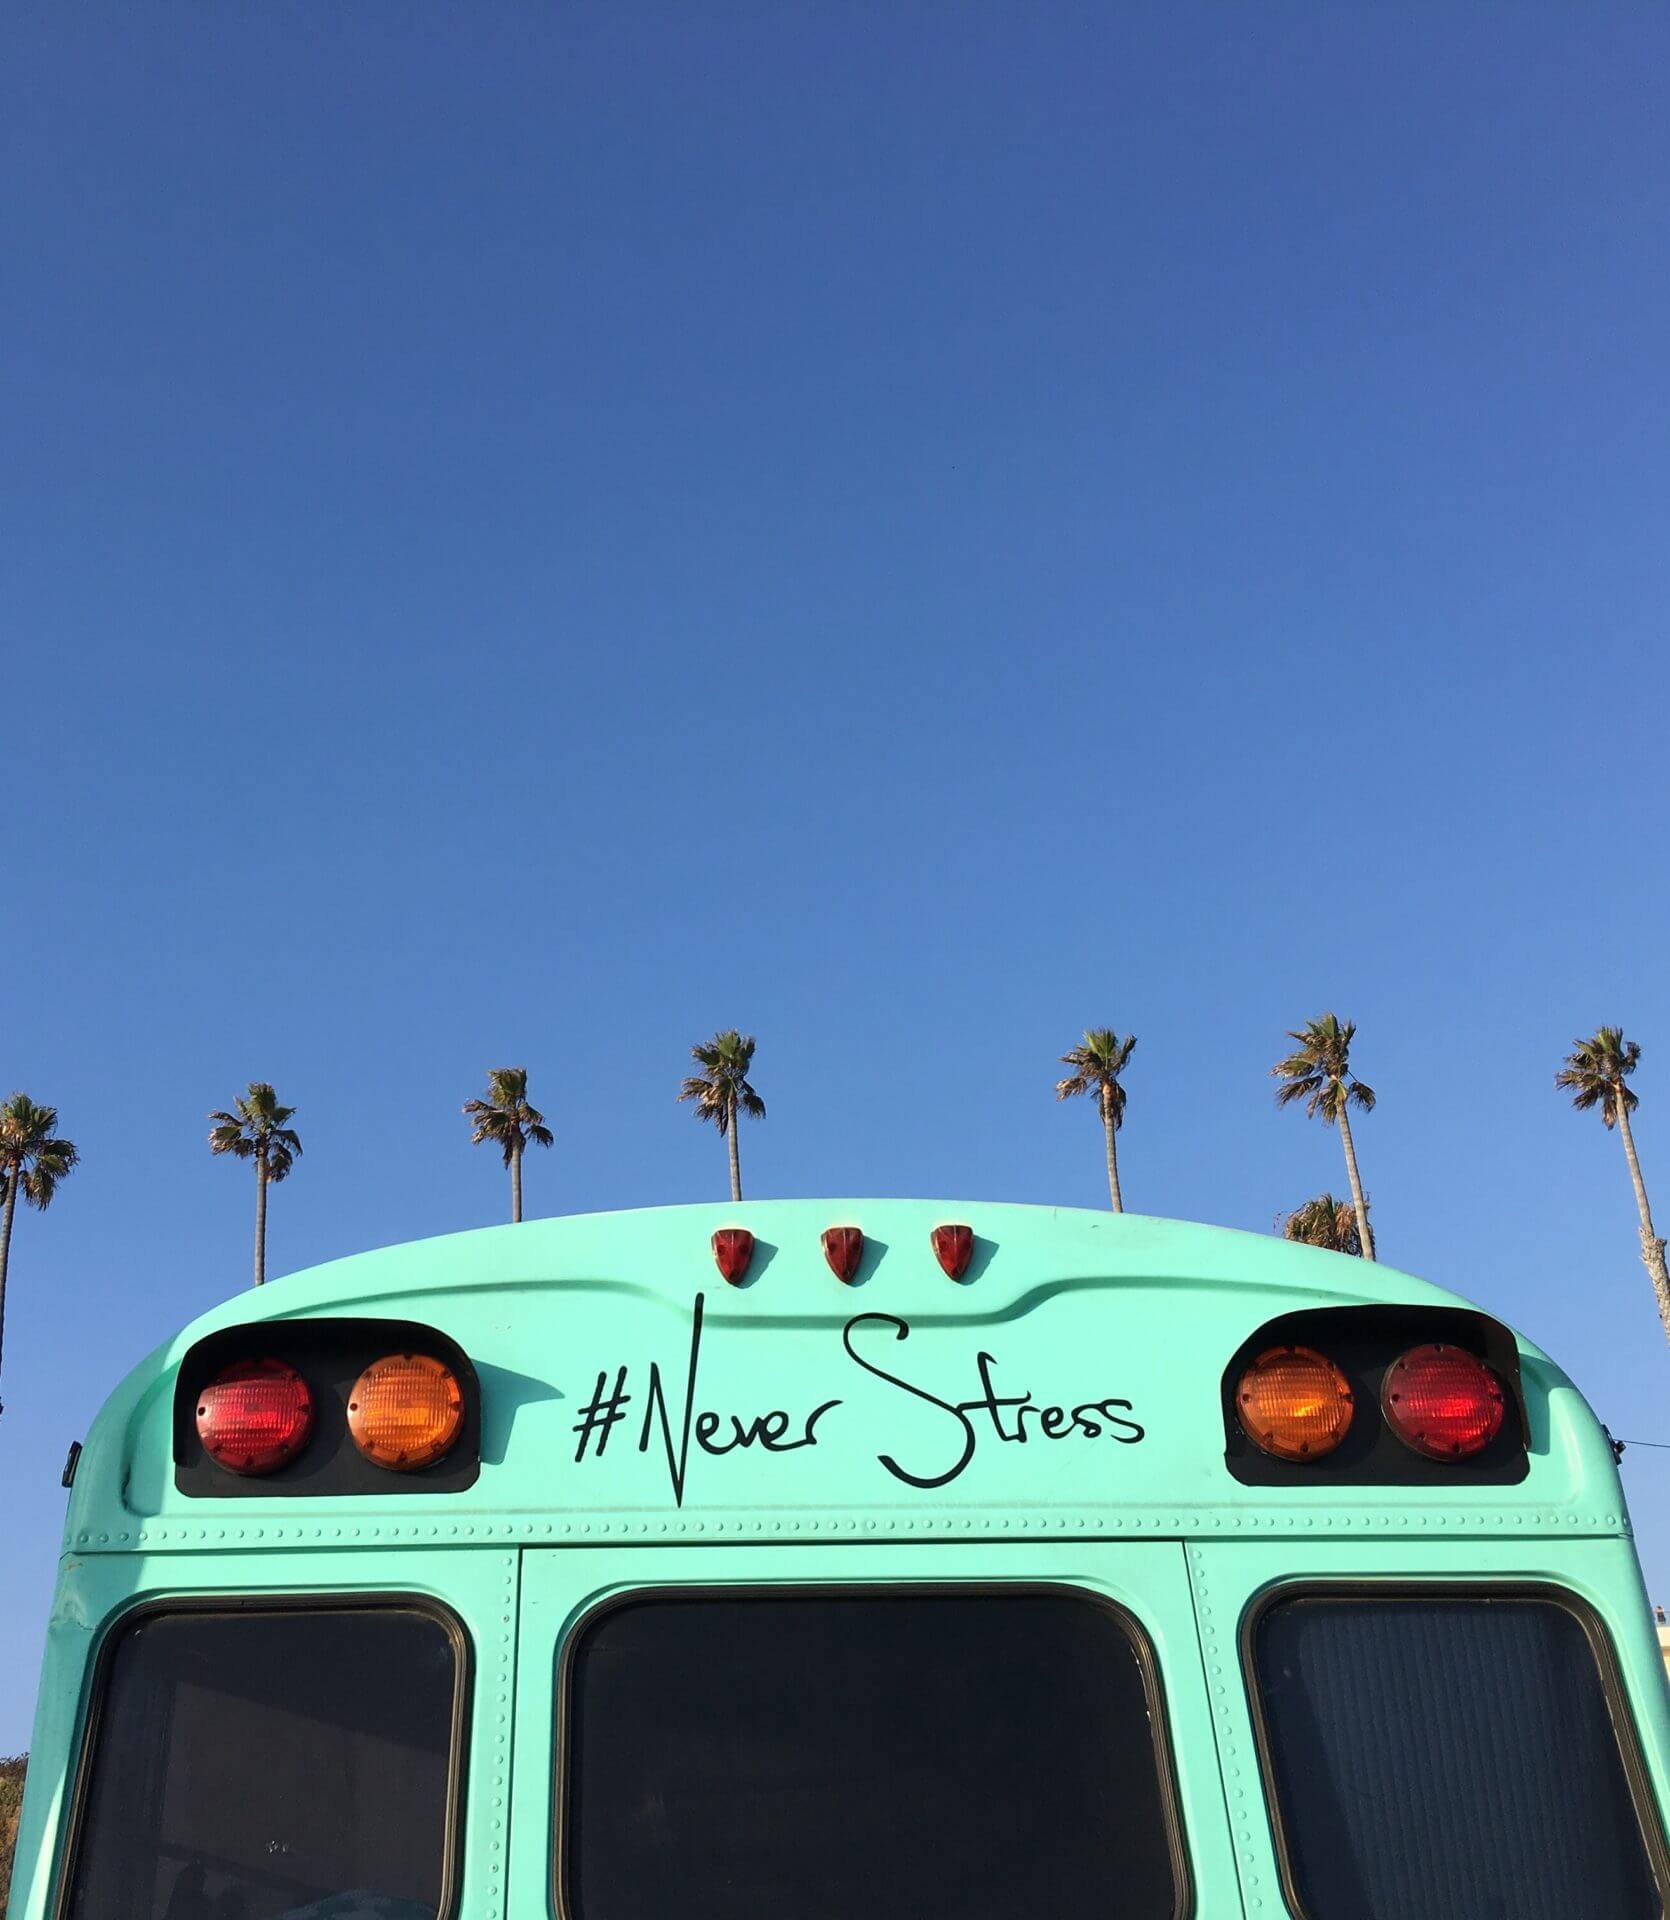 Un bus turquoise avec des palmiers dessus est le remède parfait pour combattre son stress.